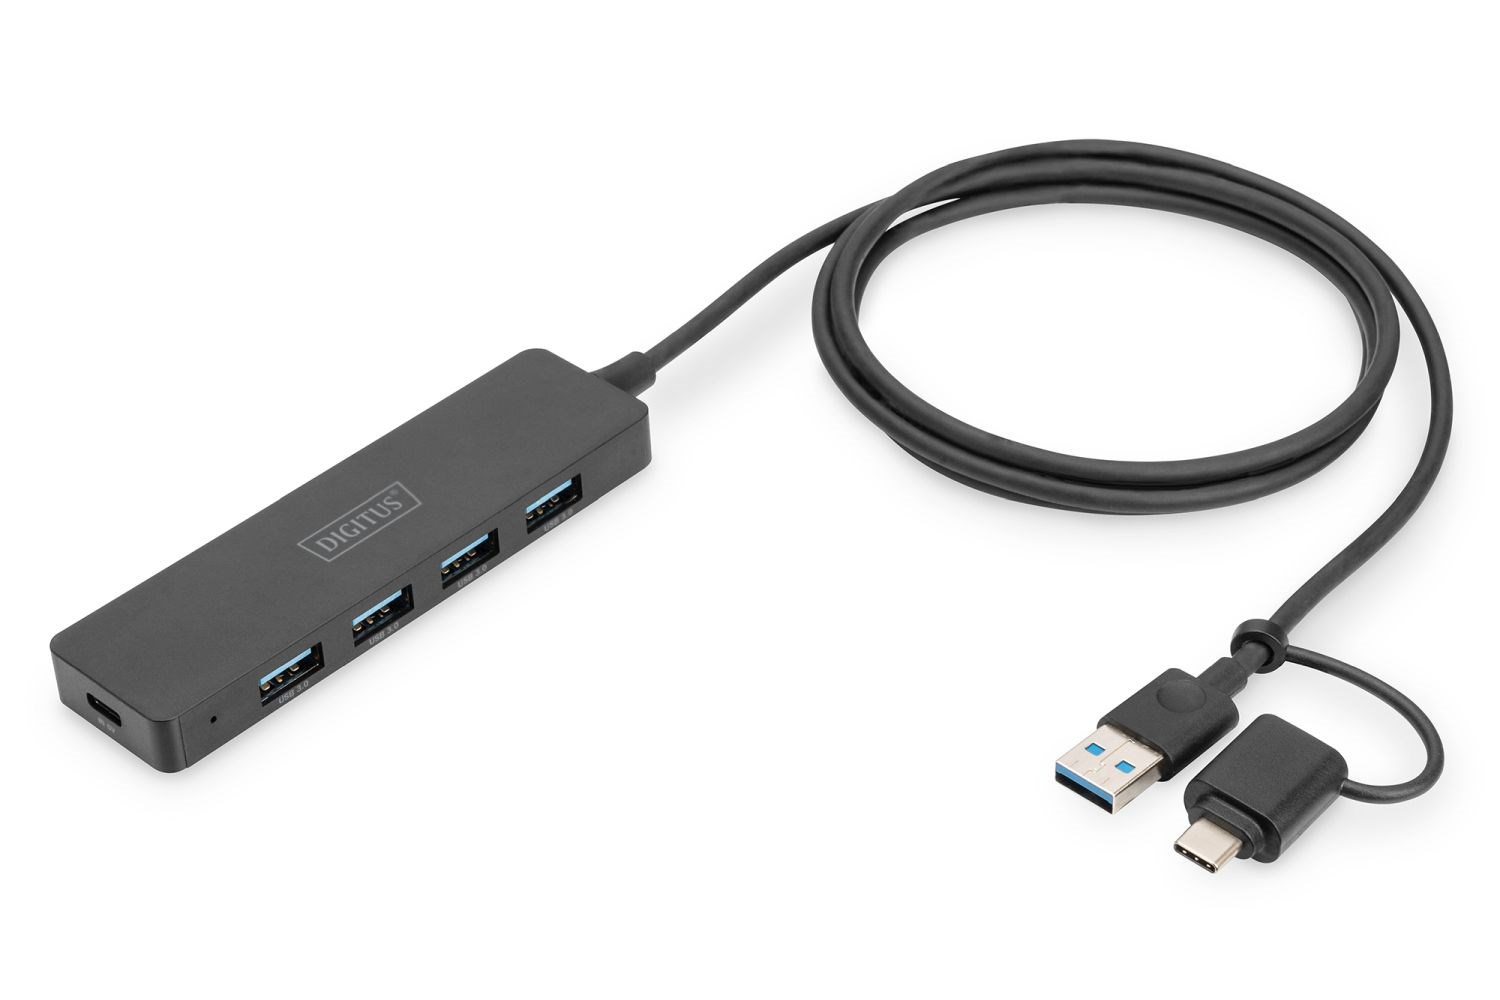 USB 3.0 Hub 4-port,  Slimline s USB-C adaptérem,  5 Gb/ s,  1, 2 m kabel

Rozšiřuje váš notebook o připojení USB-C nebo US0 